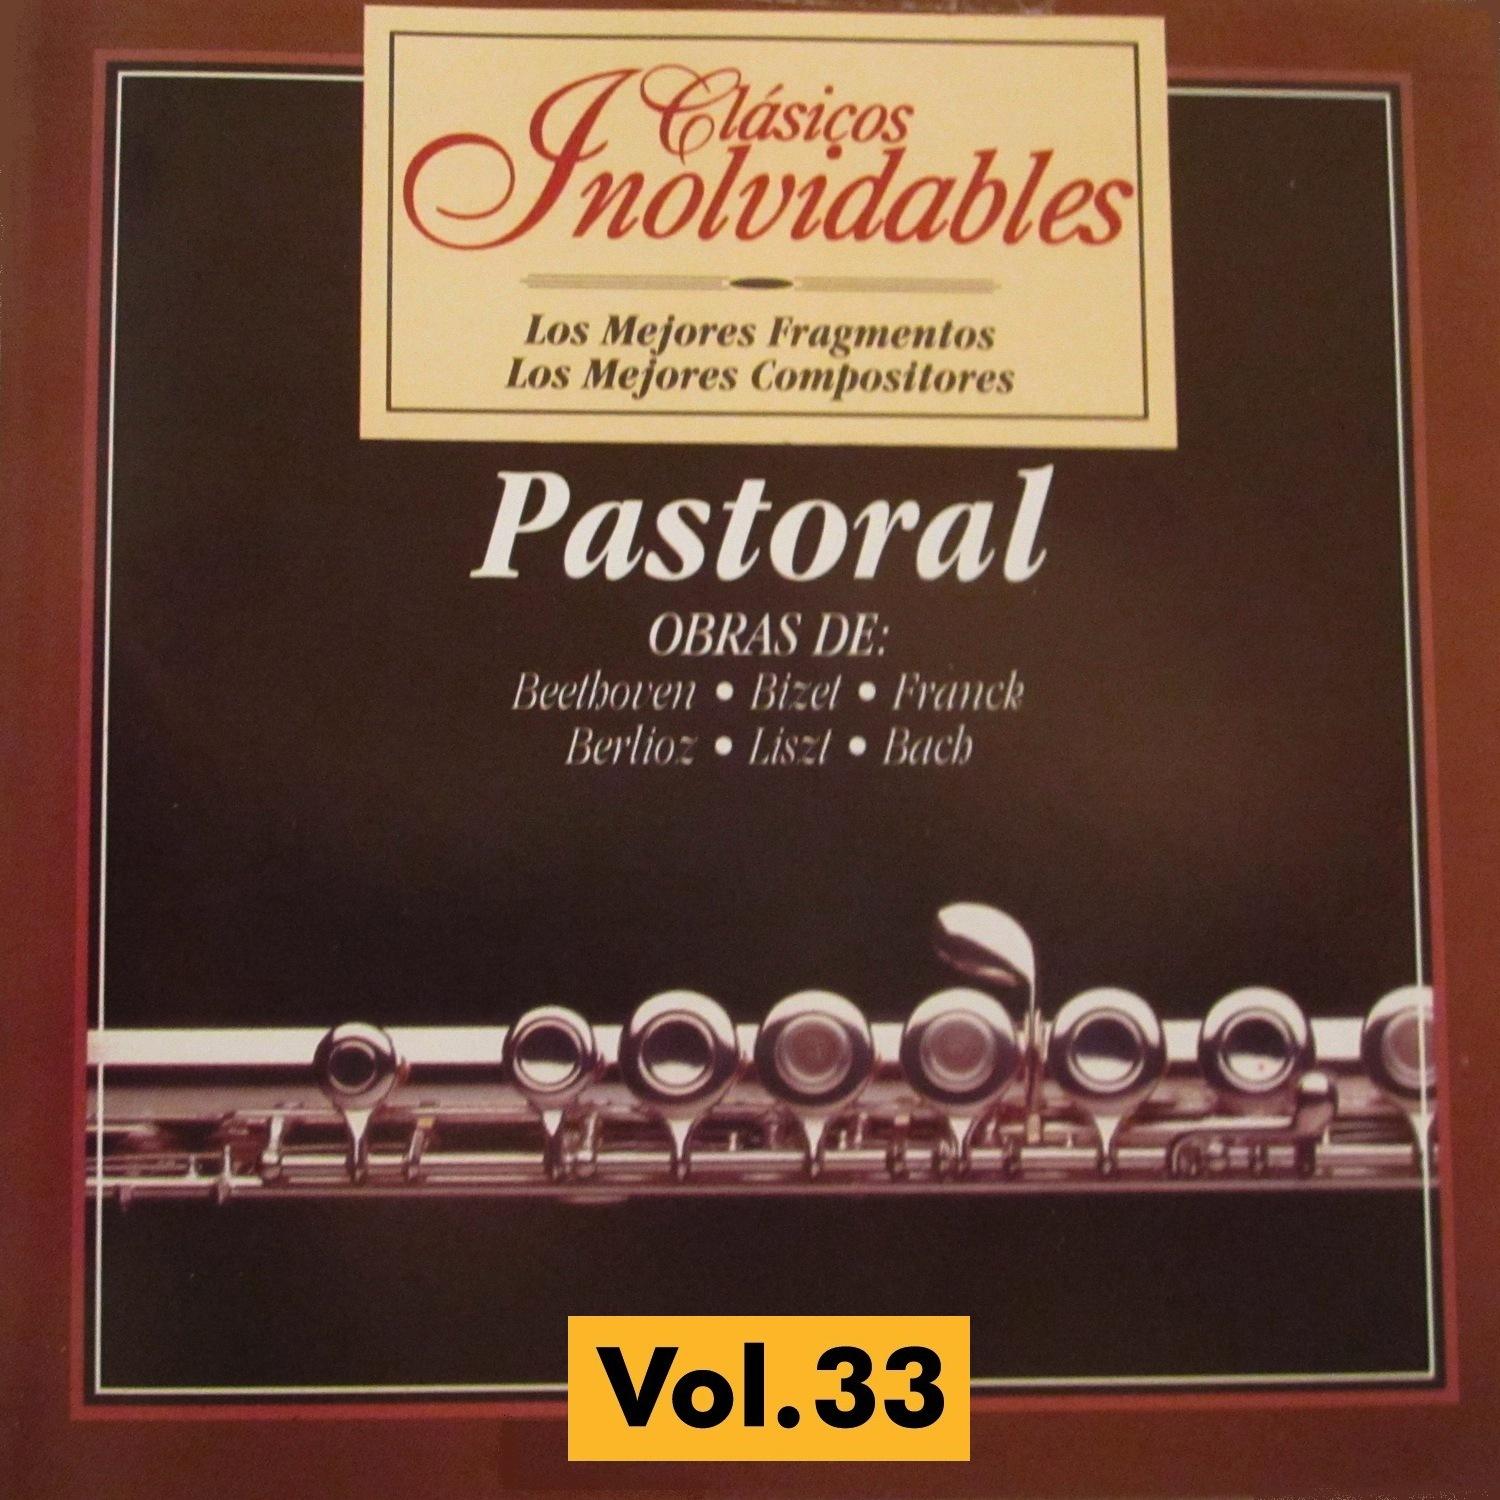 Clásicos Inolvidables Vol. 33, Pastoral